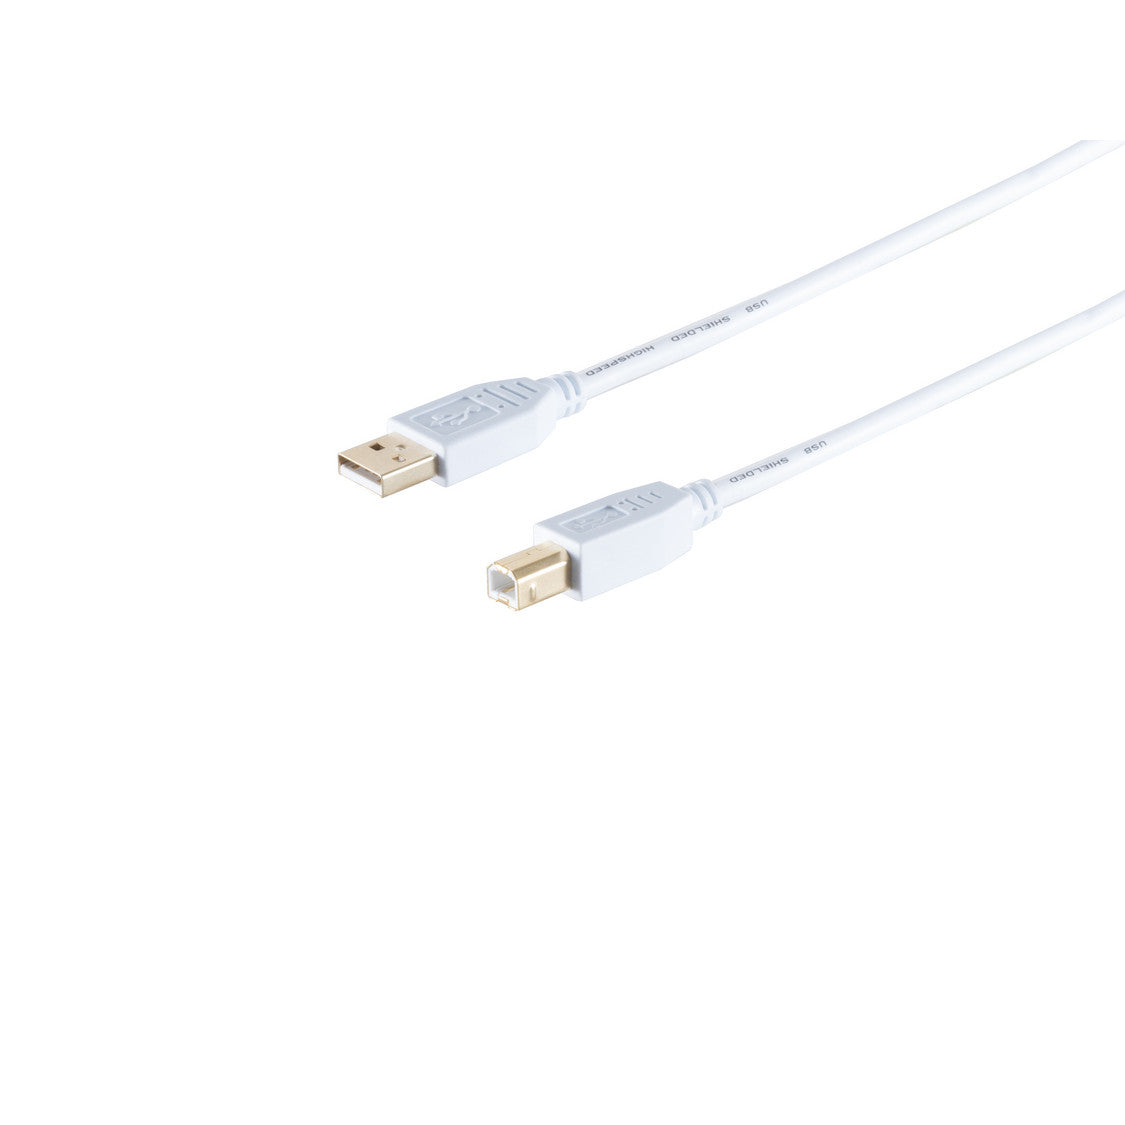 USB Kabel, Typ A Stecker auf Typ B Stecker, HIGH SPEED, vergoldete Kontakte, USB 2.0